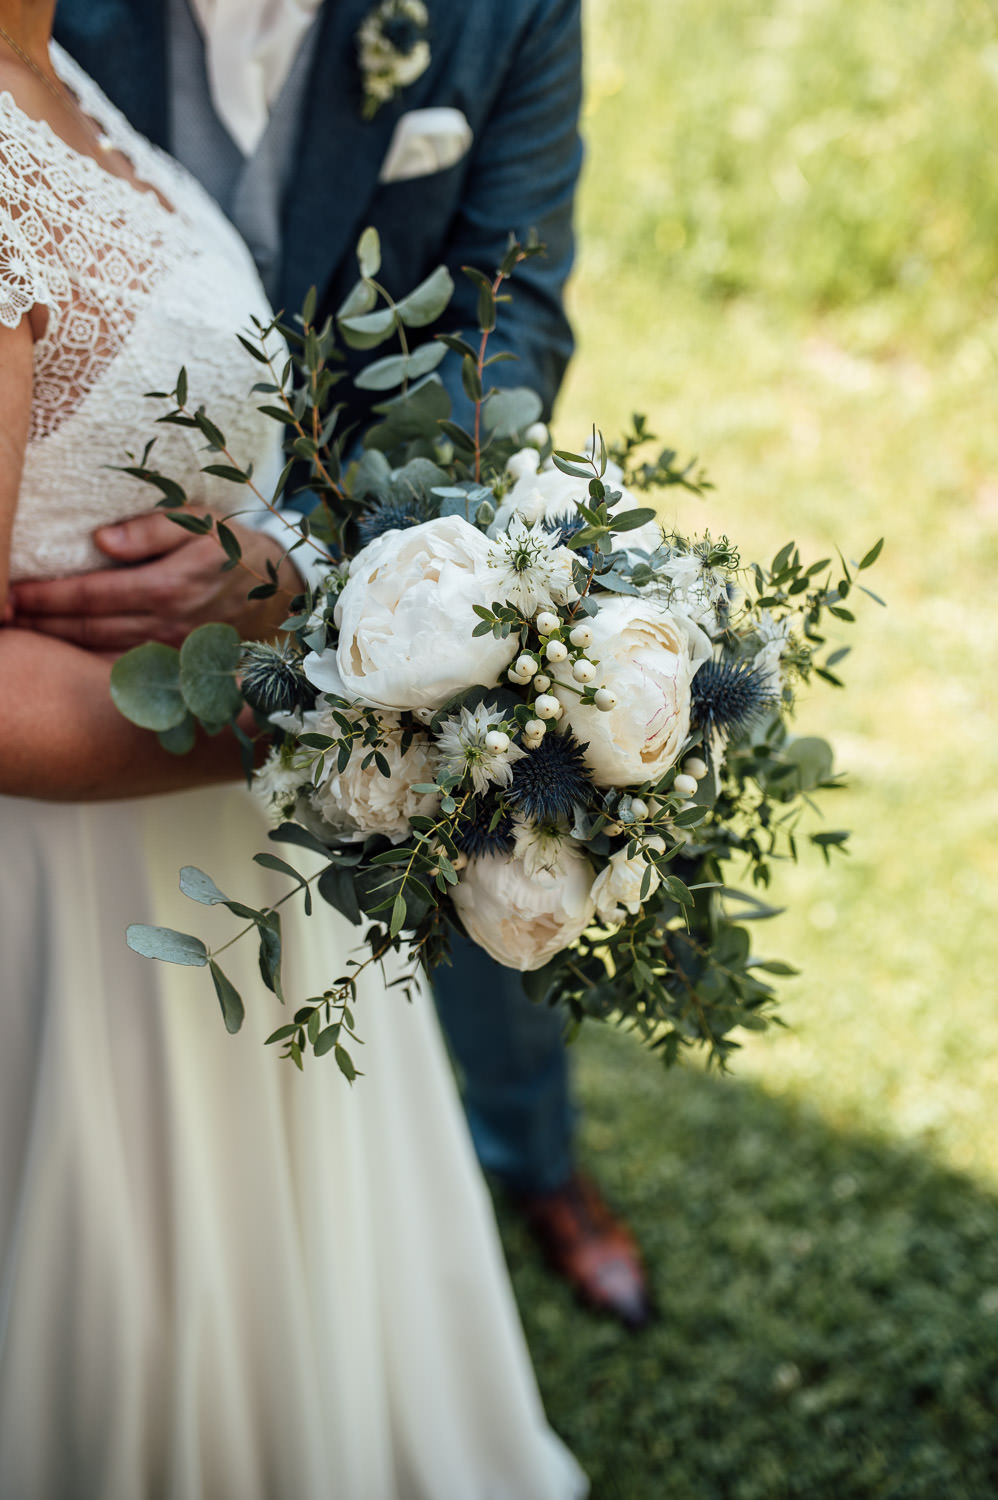 Brautstrauß aus saisonalen und regionalen Blumen